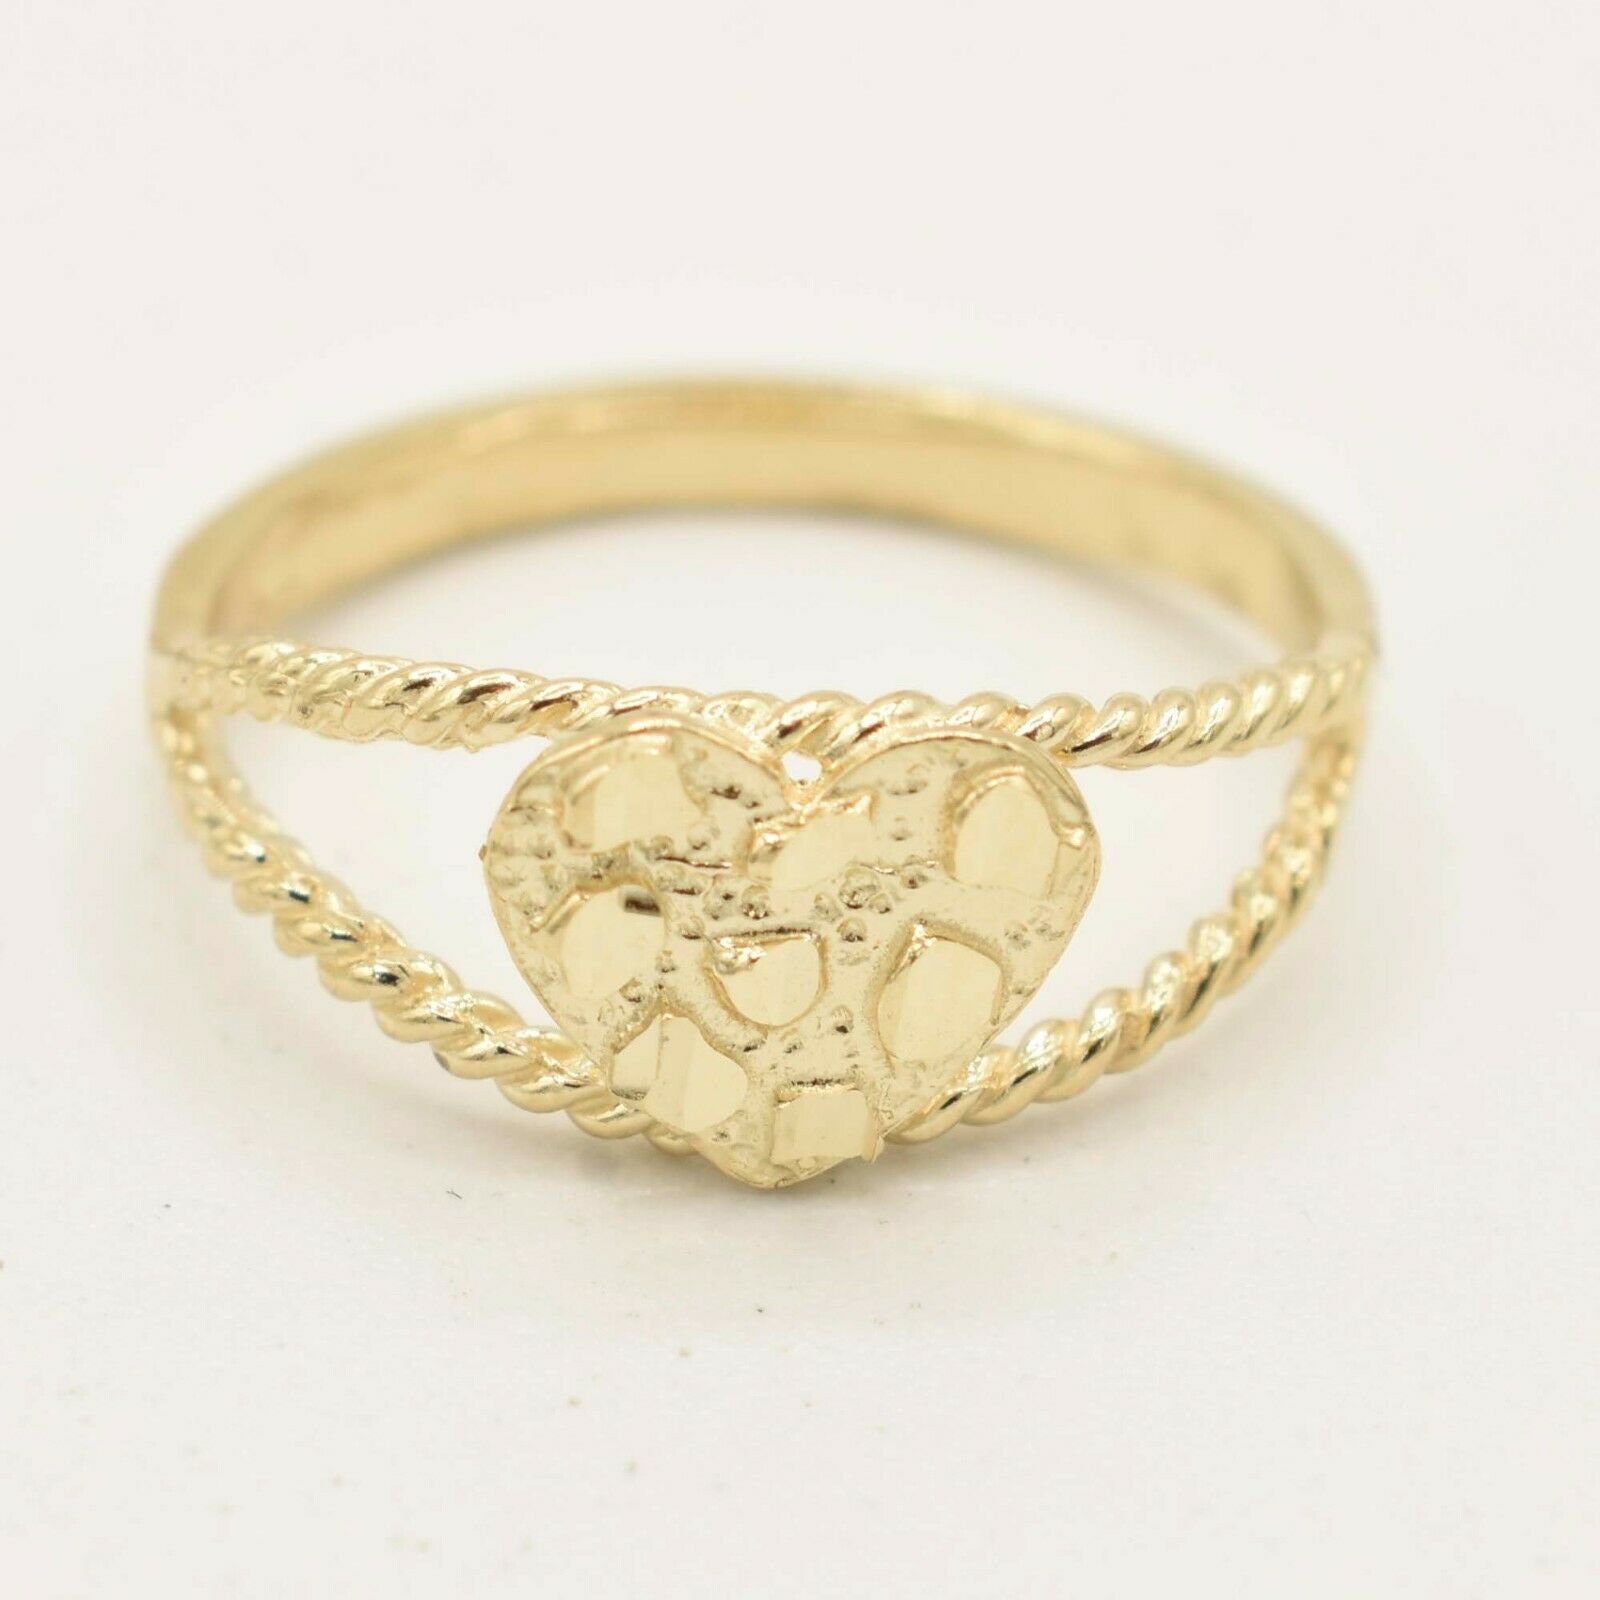 Frauen Nugget Stil Herzförmige Offene Seiten Ring Echt Massiv 10K Gelb Gold von BayamJewelry